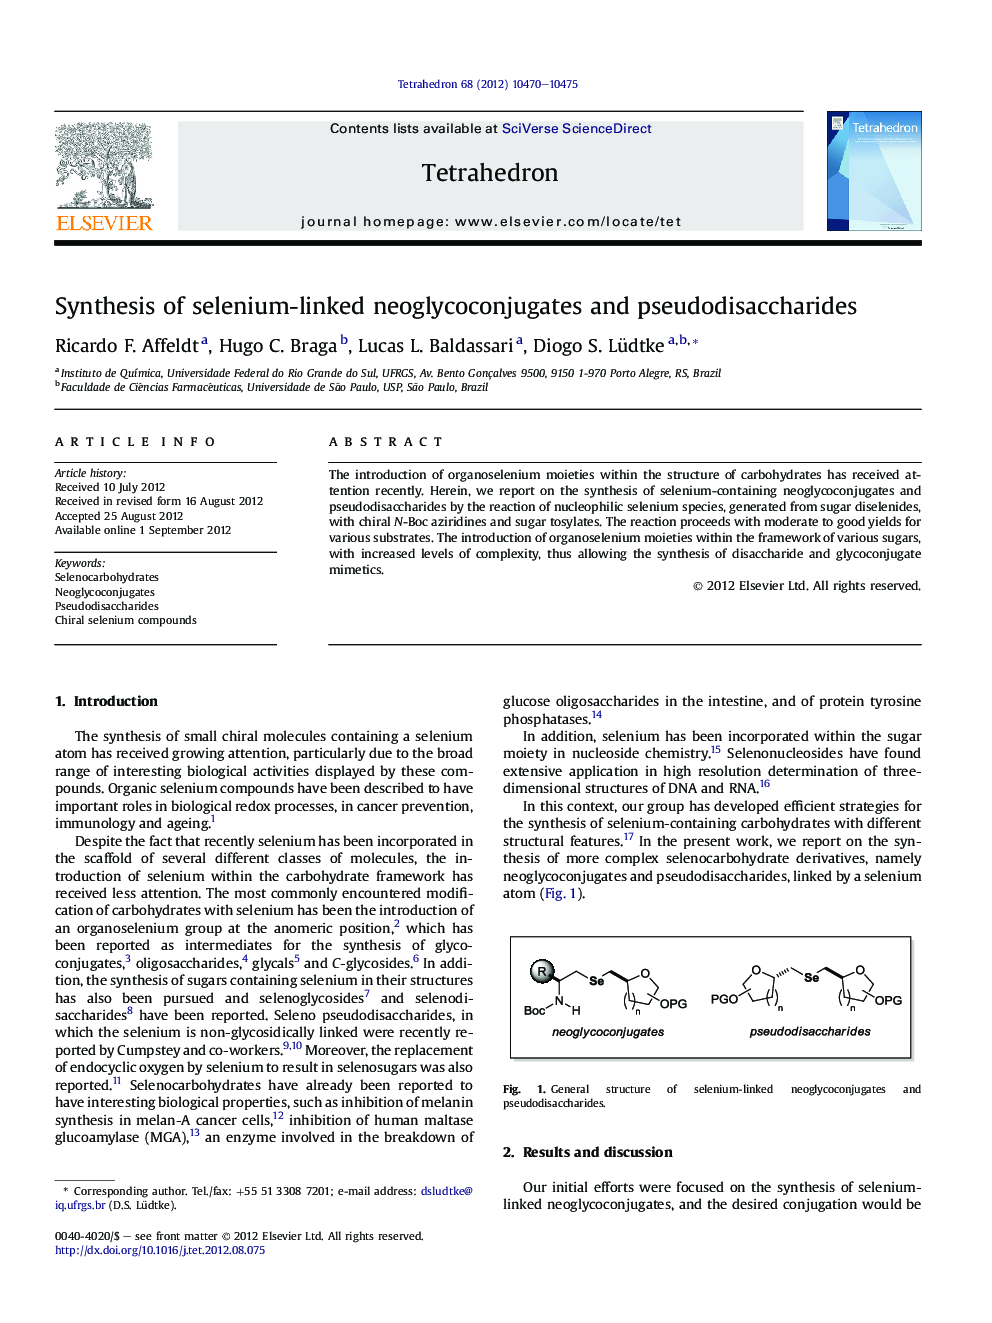 Synthesis of selenium-linked neoglycoconjugates and pseudodisaccharides